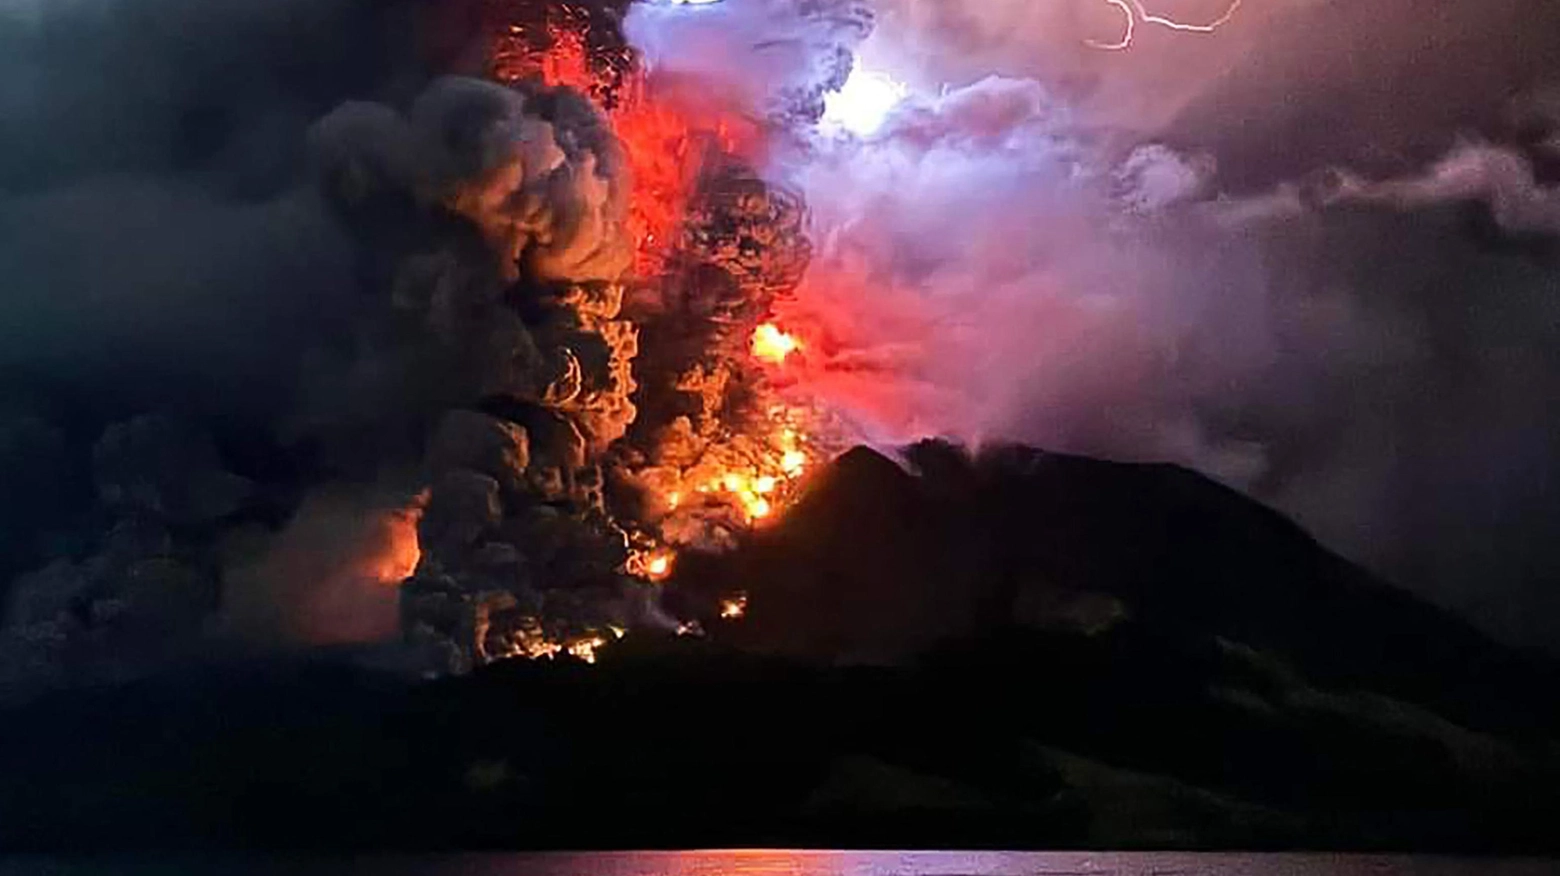 Cinque eruzioni in successione del vulcano che si trova su un’isola a nord di Sulawesi. Evacuate migliaia di persone, massima allerta delle autorità anche per il rischio di tsunami